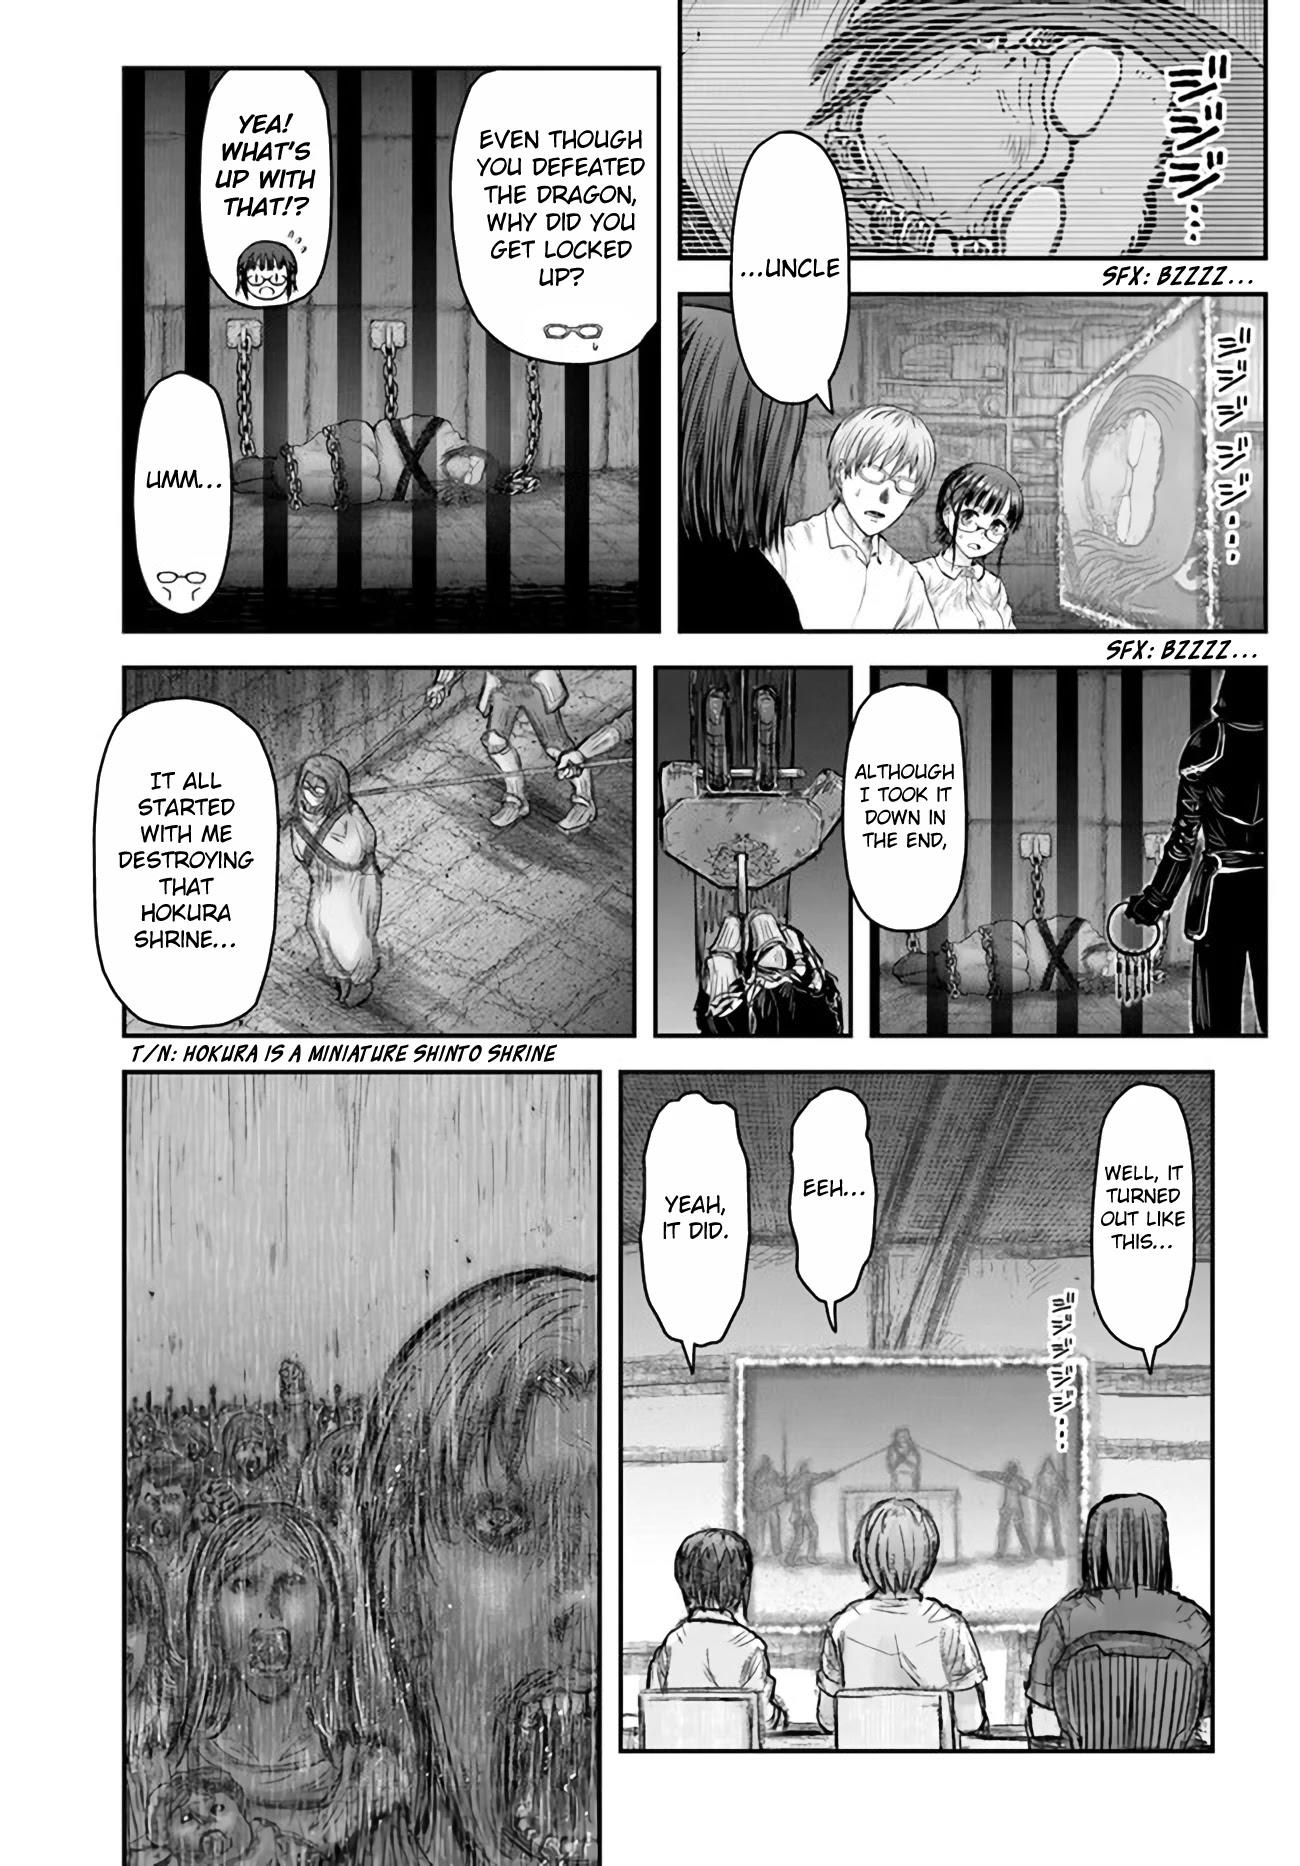 Isekai Ojisan, Chapter 18 - Isekai Ojisan Manga Online